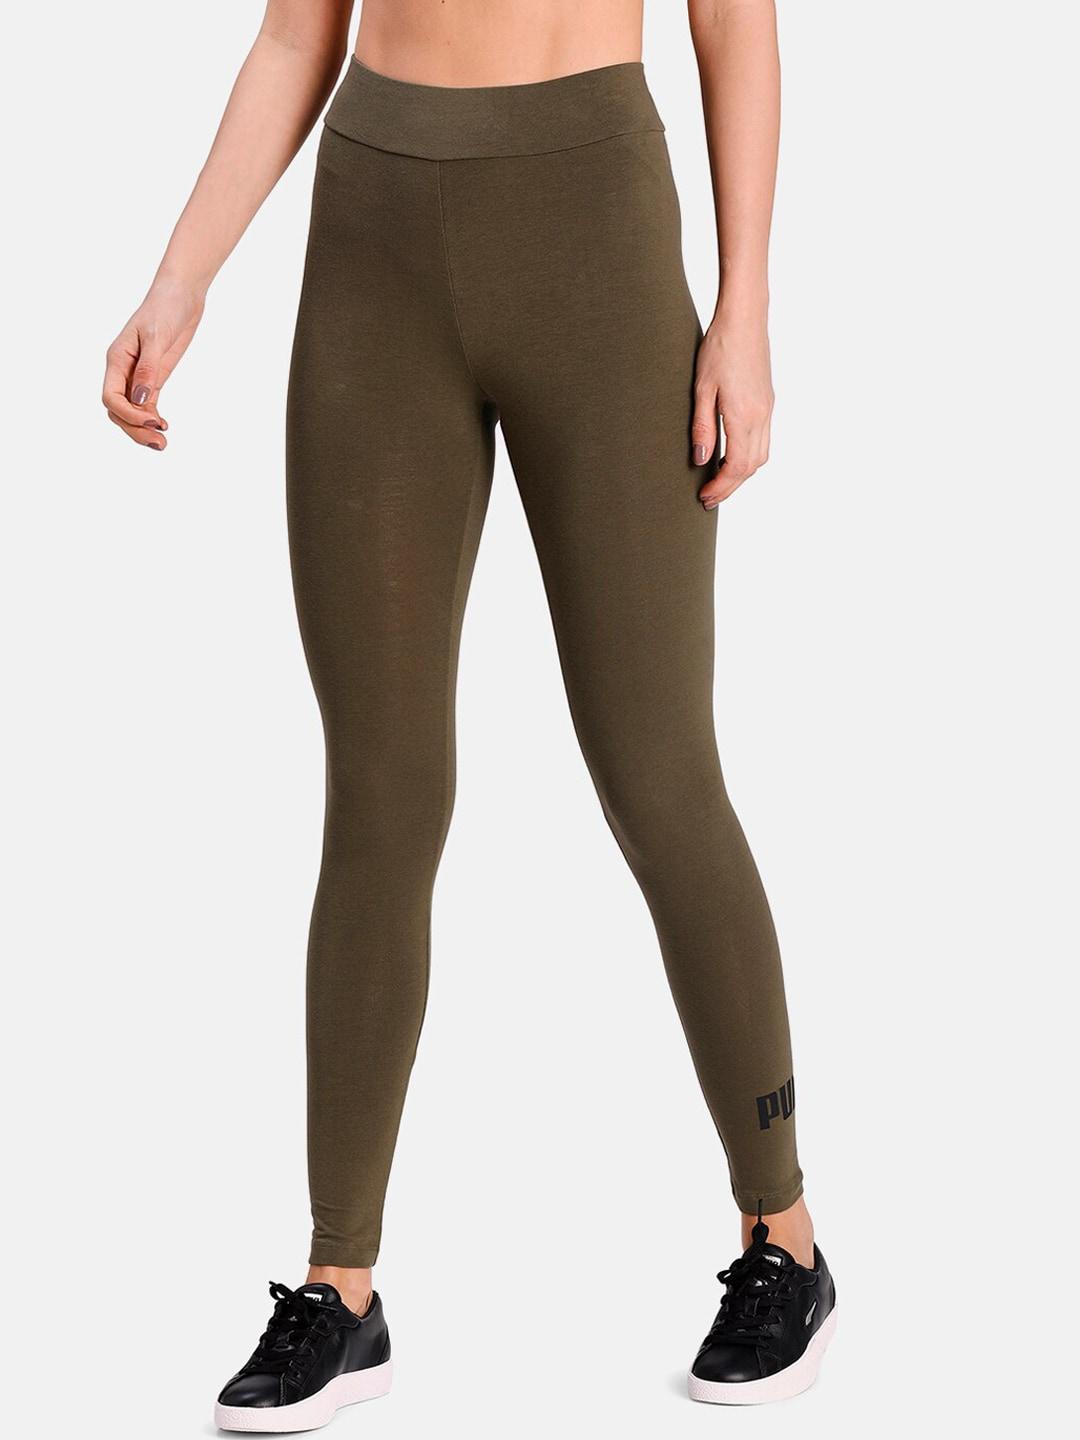 puma women olive brown printed leggings